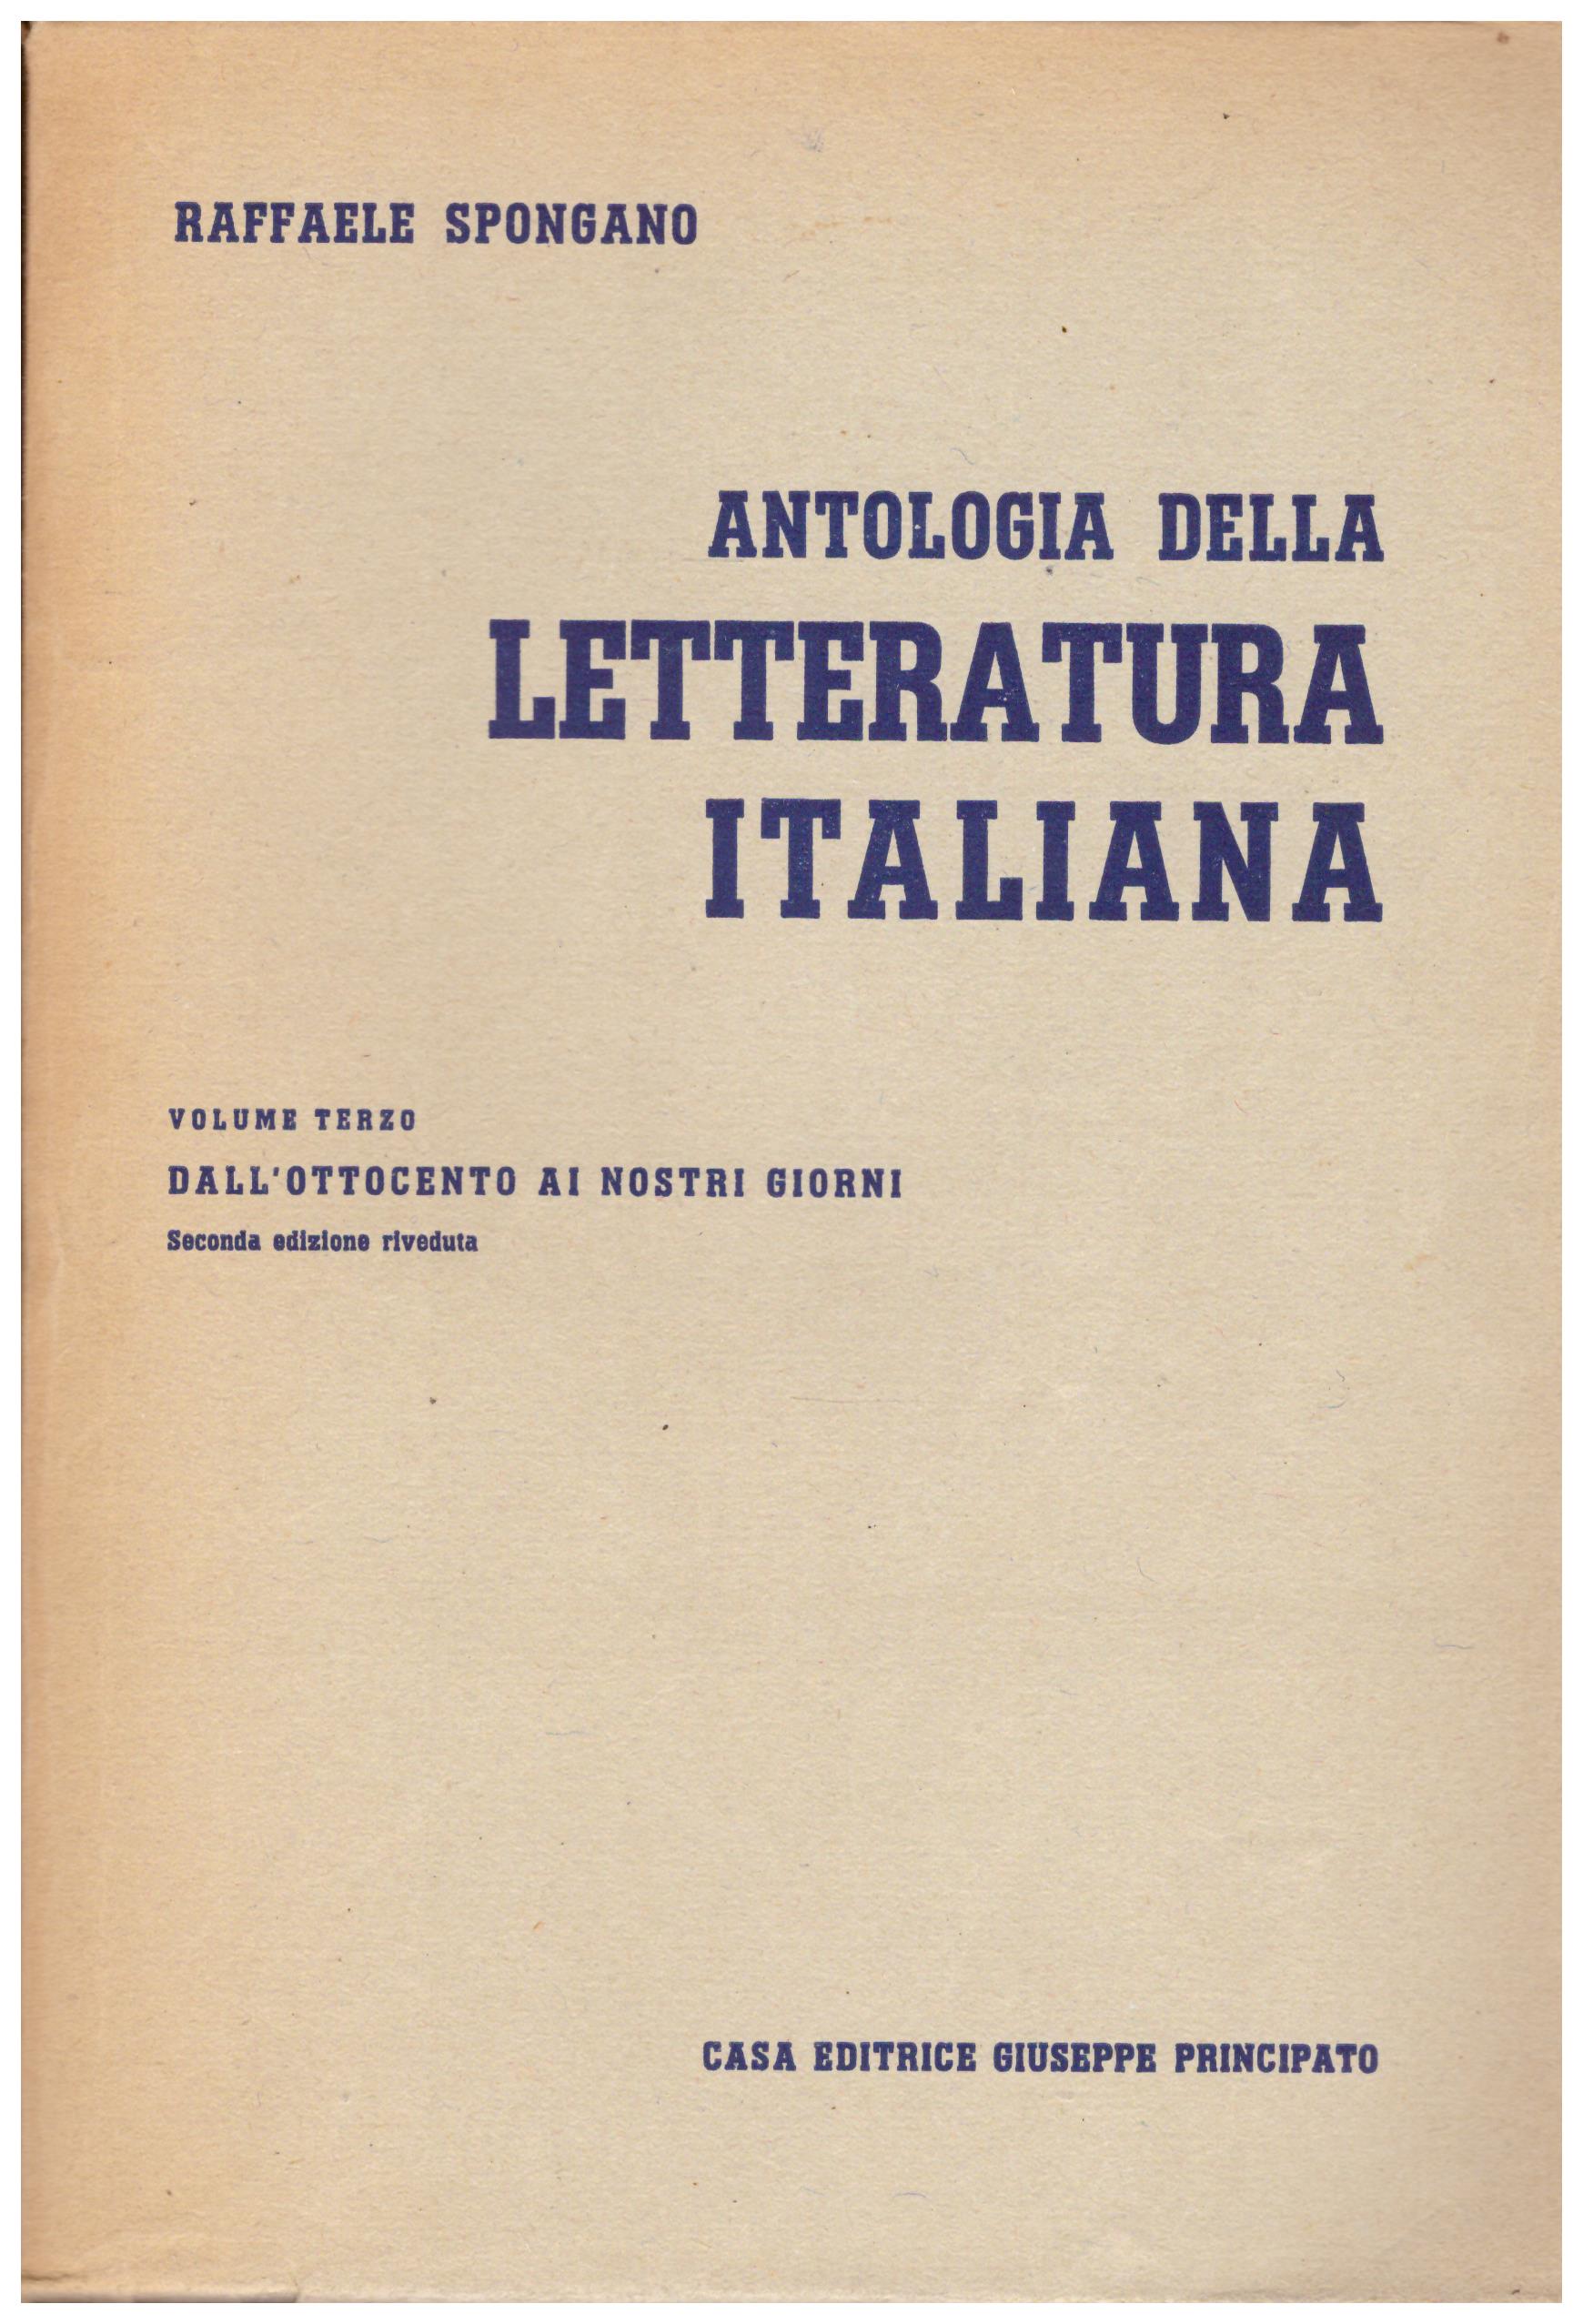 Titolo: Antologia della letteratura italiana vol 3  autore: Raffaele Spongano  editore: casa editrice giuseppe principato 1947